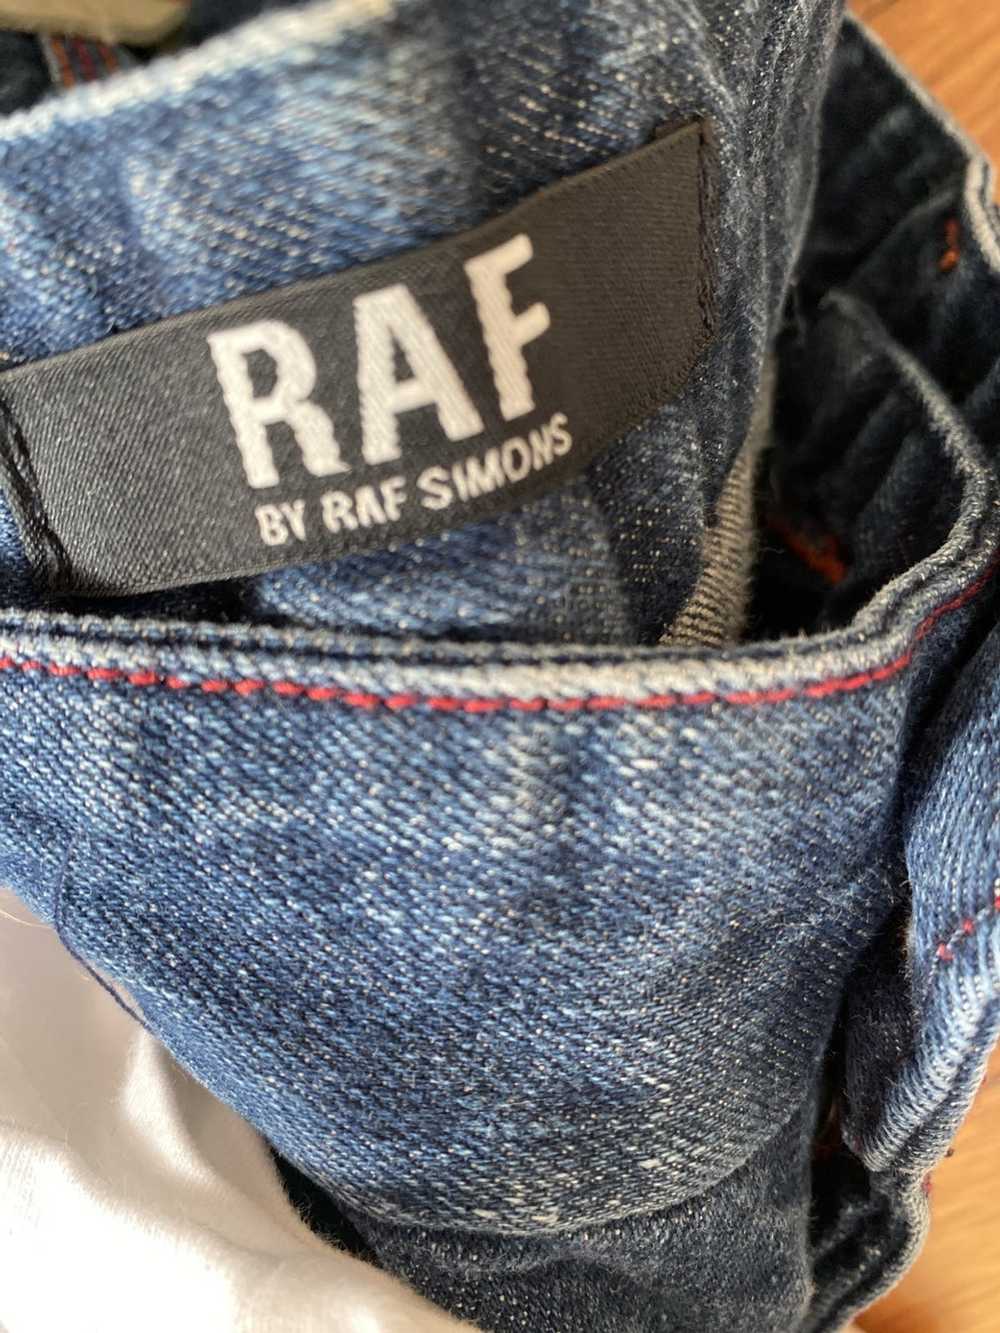 Raf Simons × Raf by Raf Simons Raf by Raf Simmons - image 8